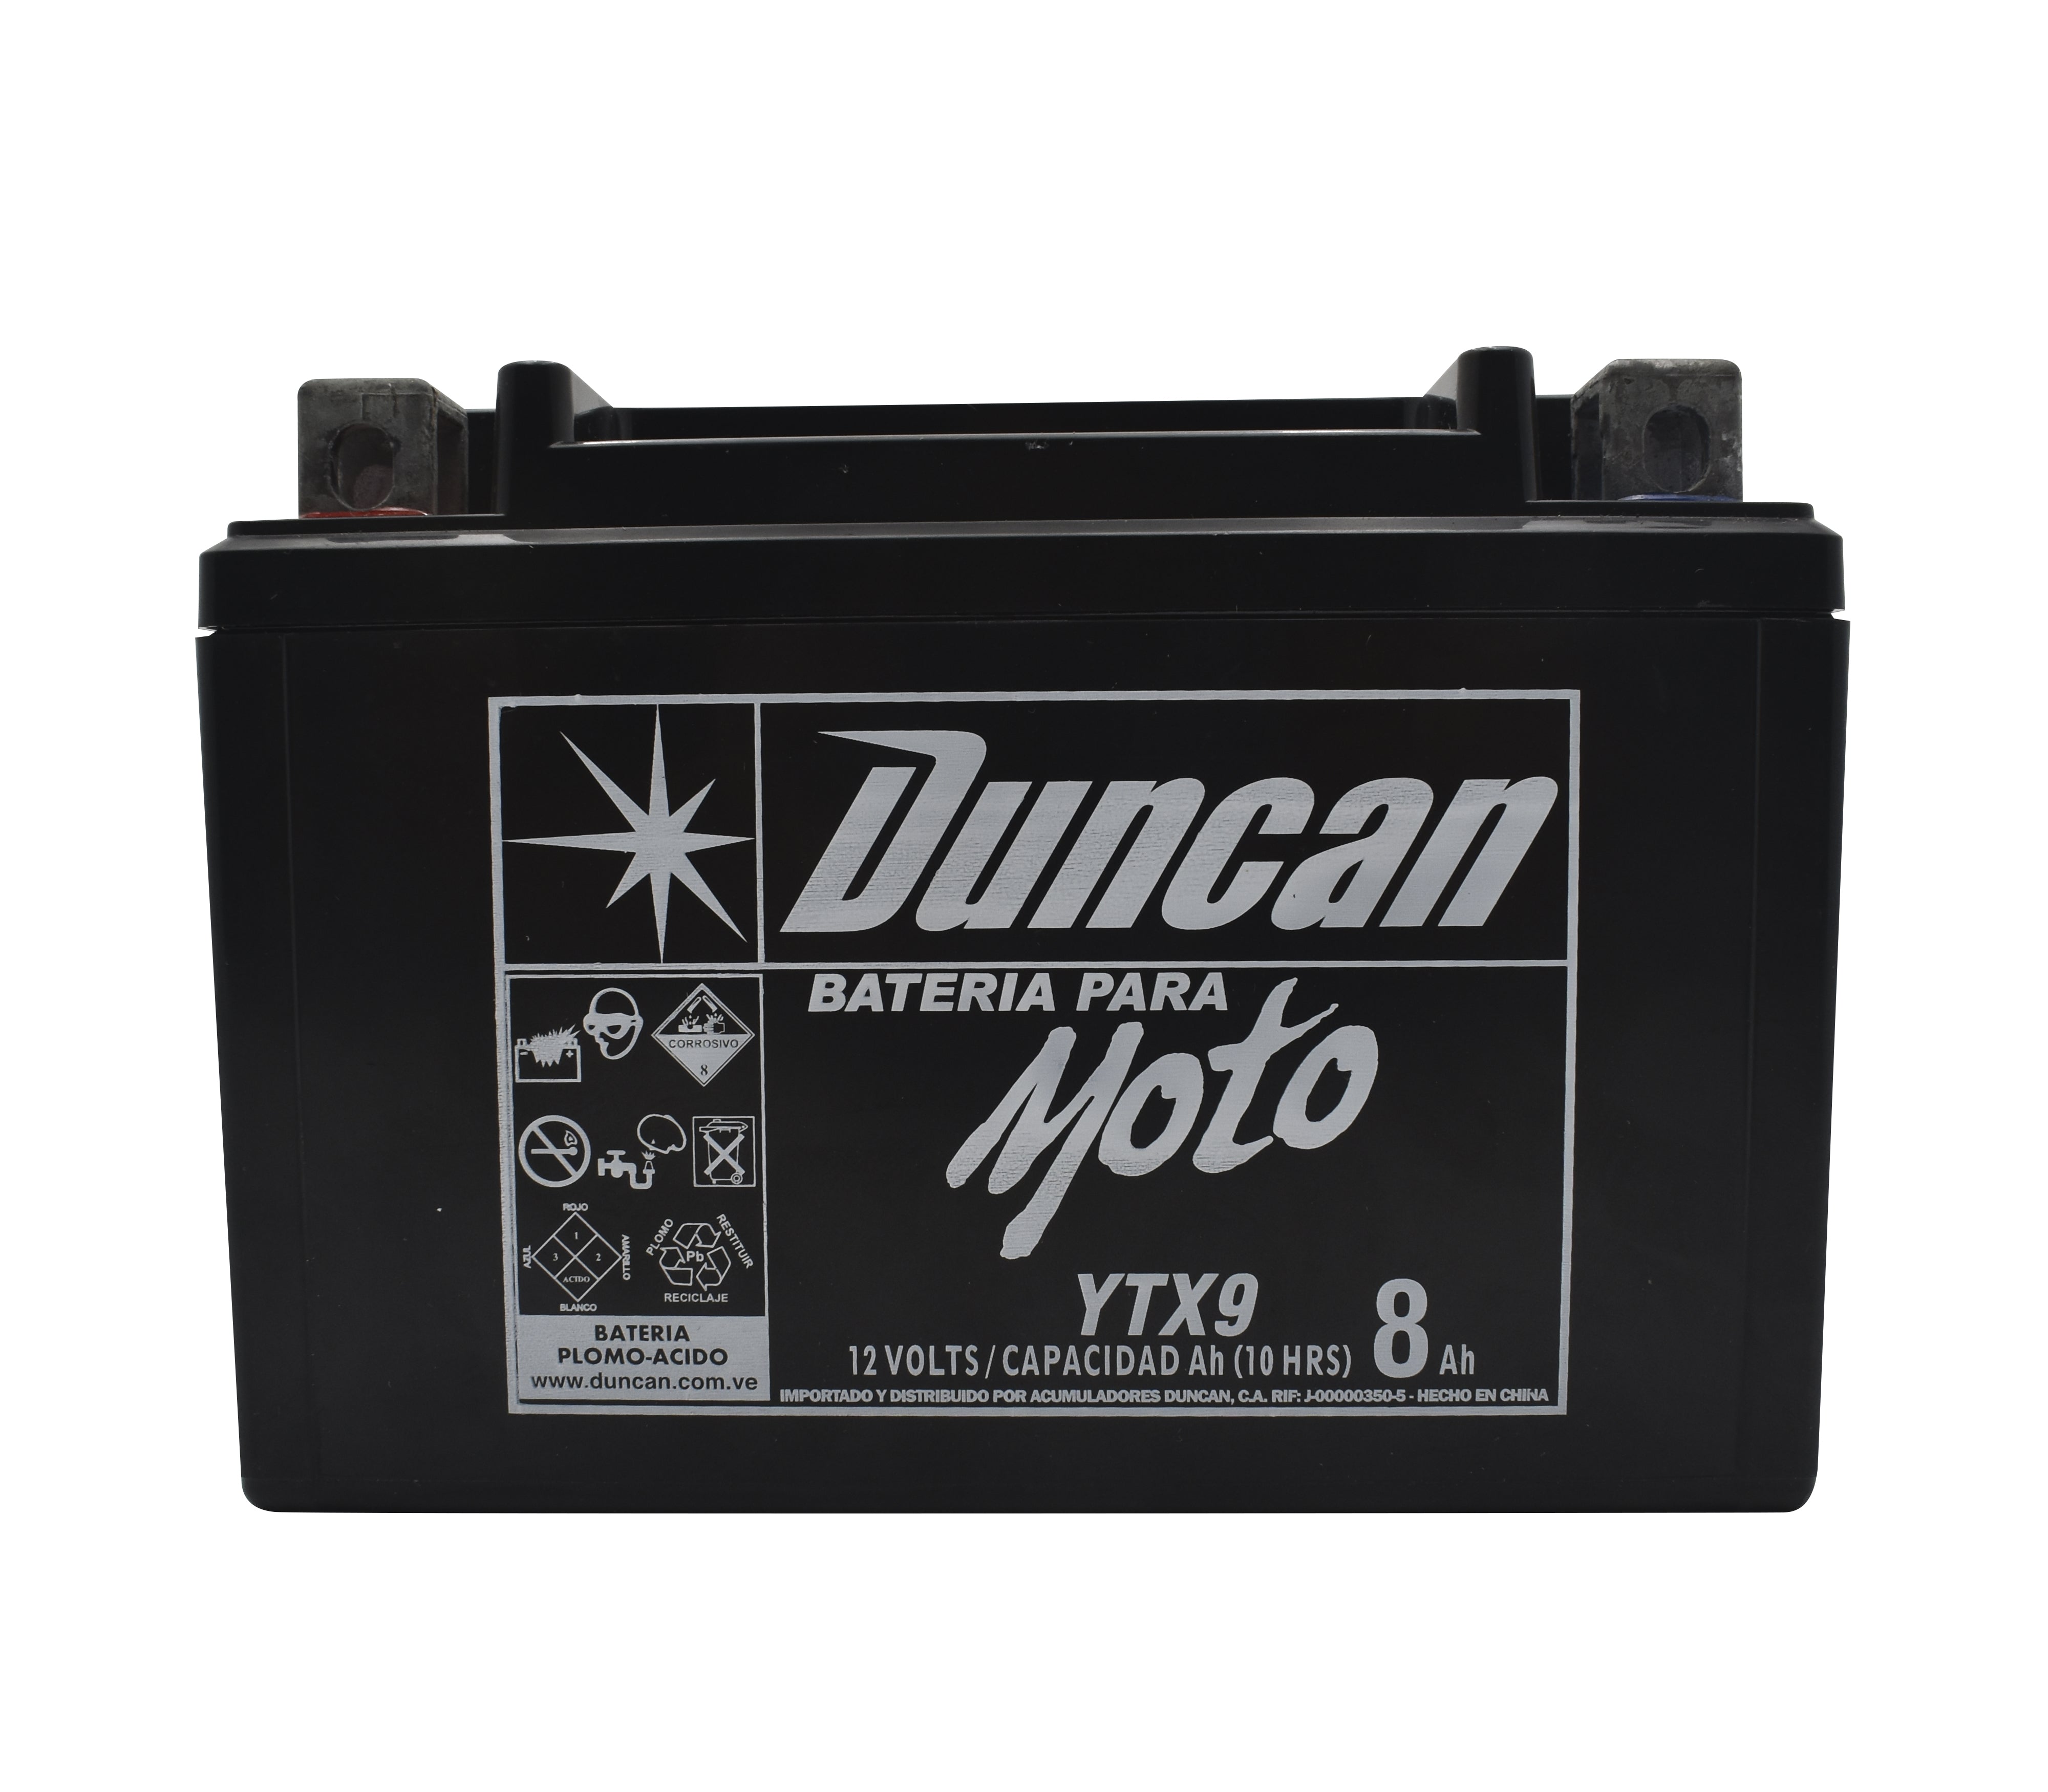 Batería para moto YTX9 Duncan –